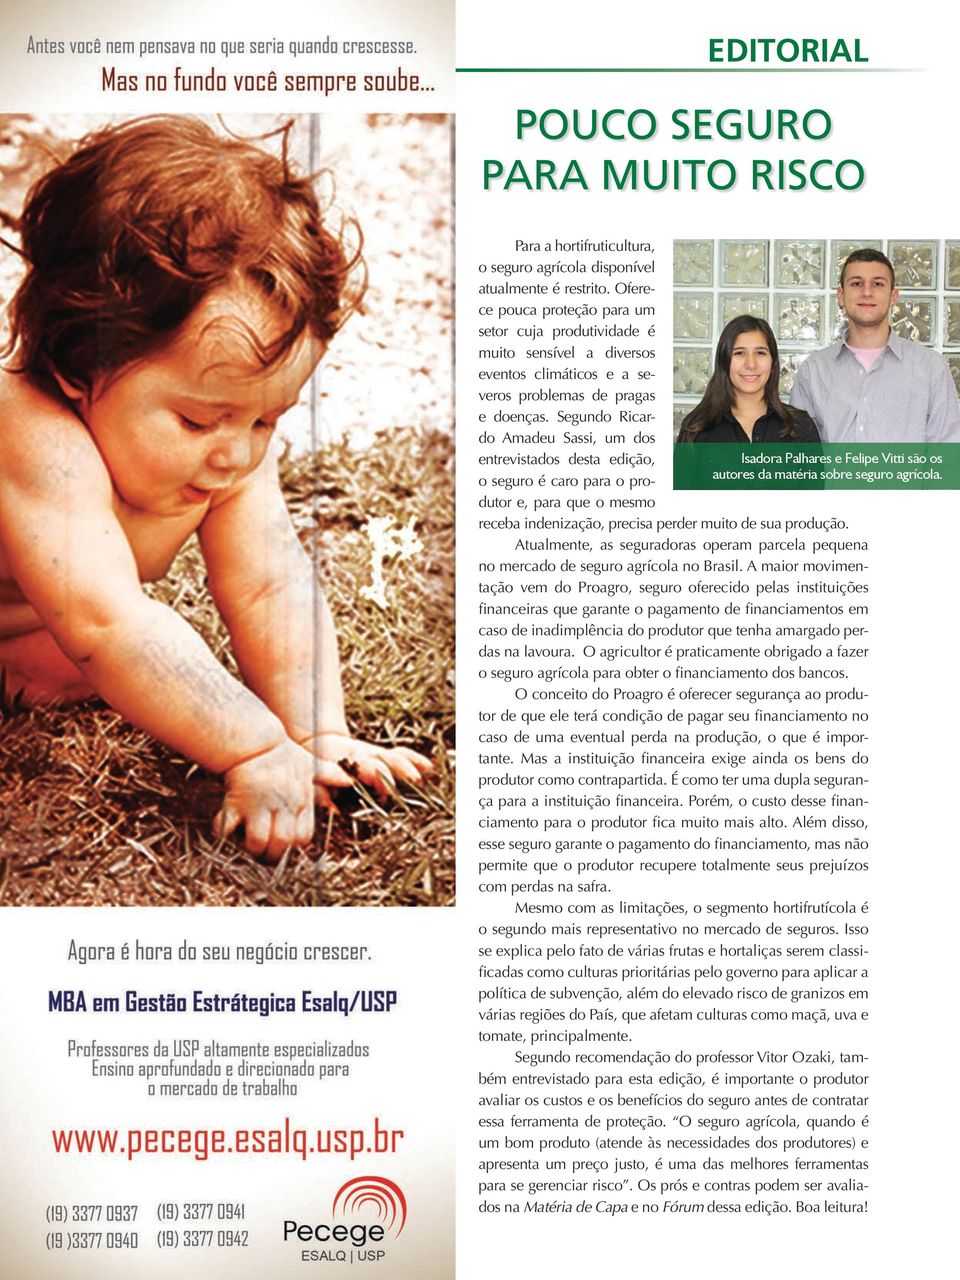 Segundo Ricardo Amadeu Sassi, um dos entrevistados desta edição, Isadora Palhares e Felipe Vitti são os o seguro é caro para o produtor e, para que o mesmo autores da matéria sobre seguro agrícola.